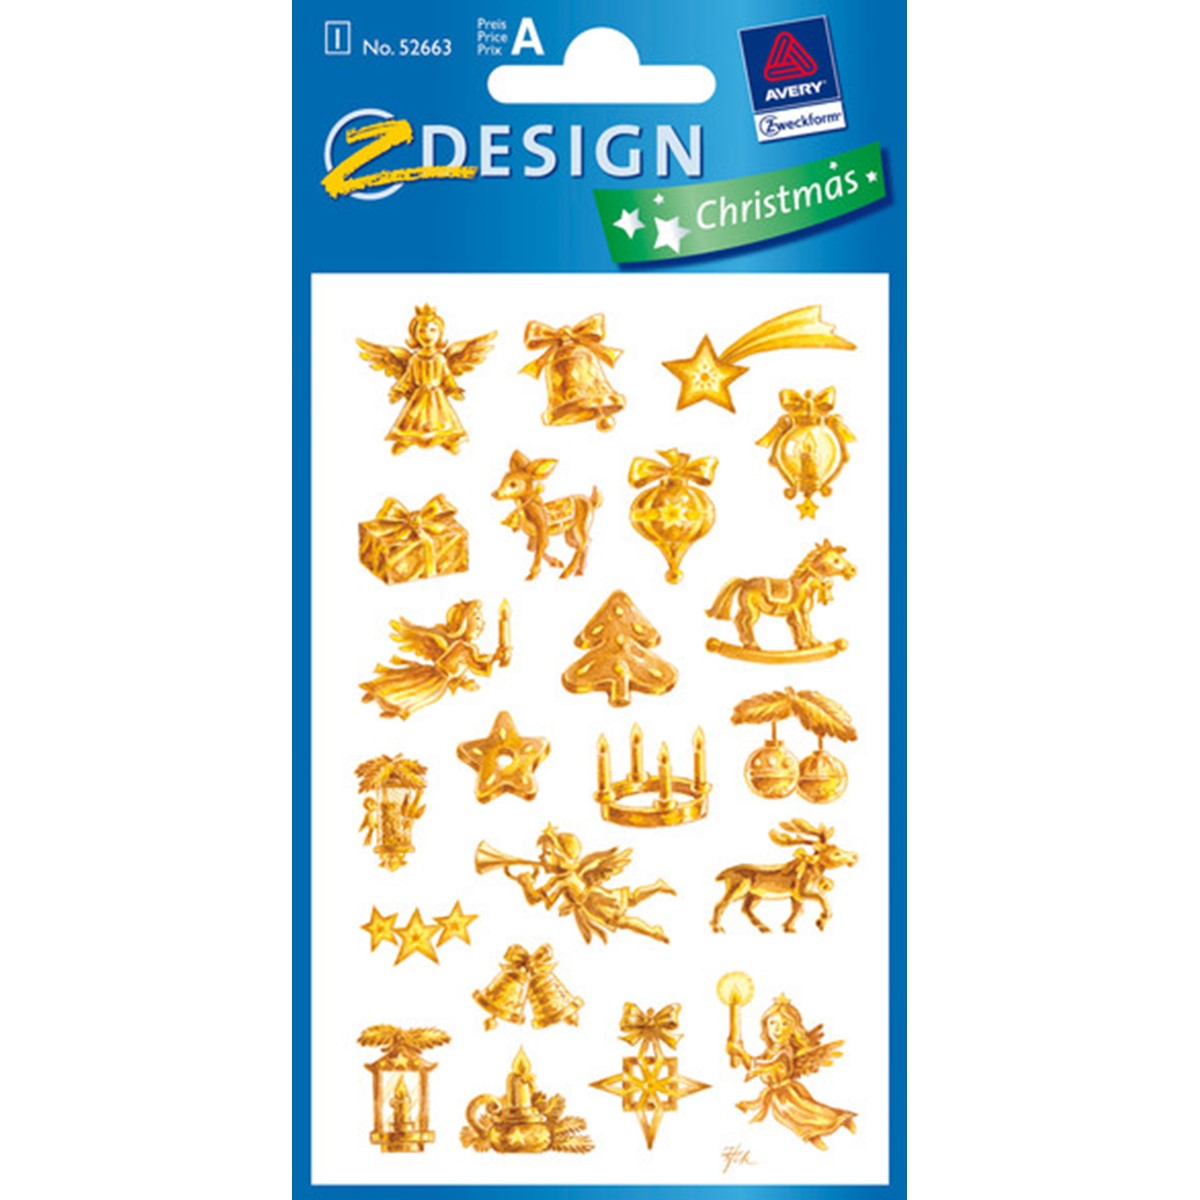 Z-Design 52663 Crystal Sticker WE-Marken, gold